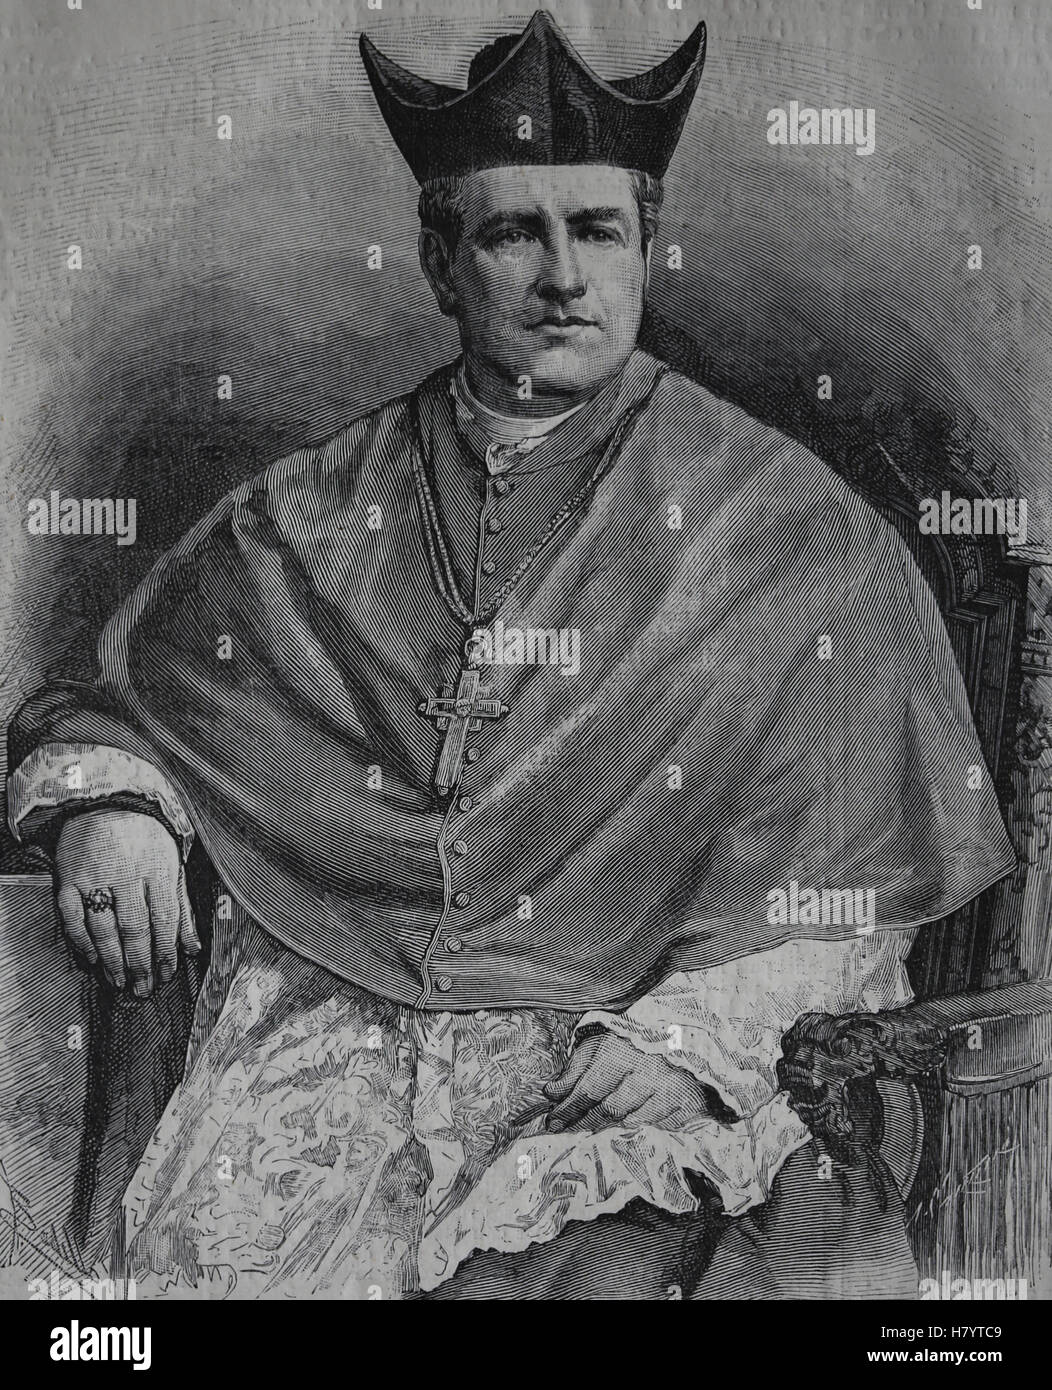 Inocencio María Yeregui (1833-1890). Clérigo uruguayo. Obispo auxiliar de Montevideo. Grabado, 1882 Foto de stock